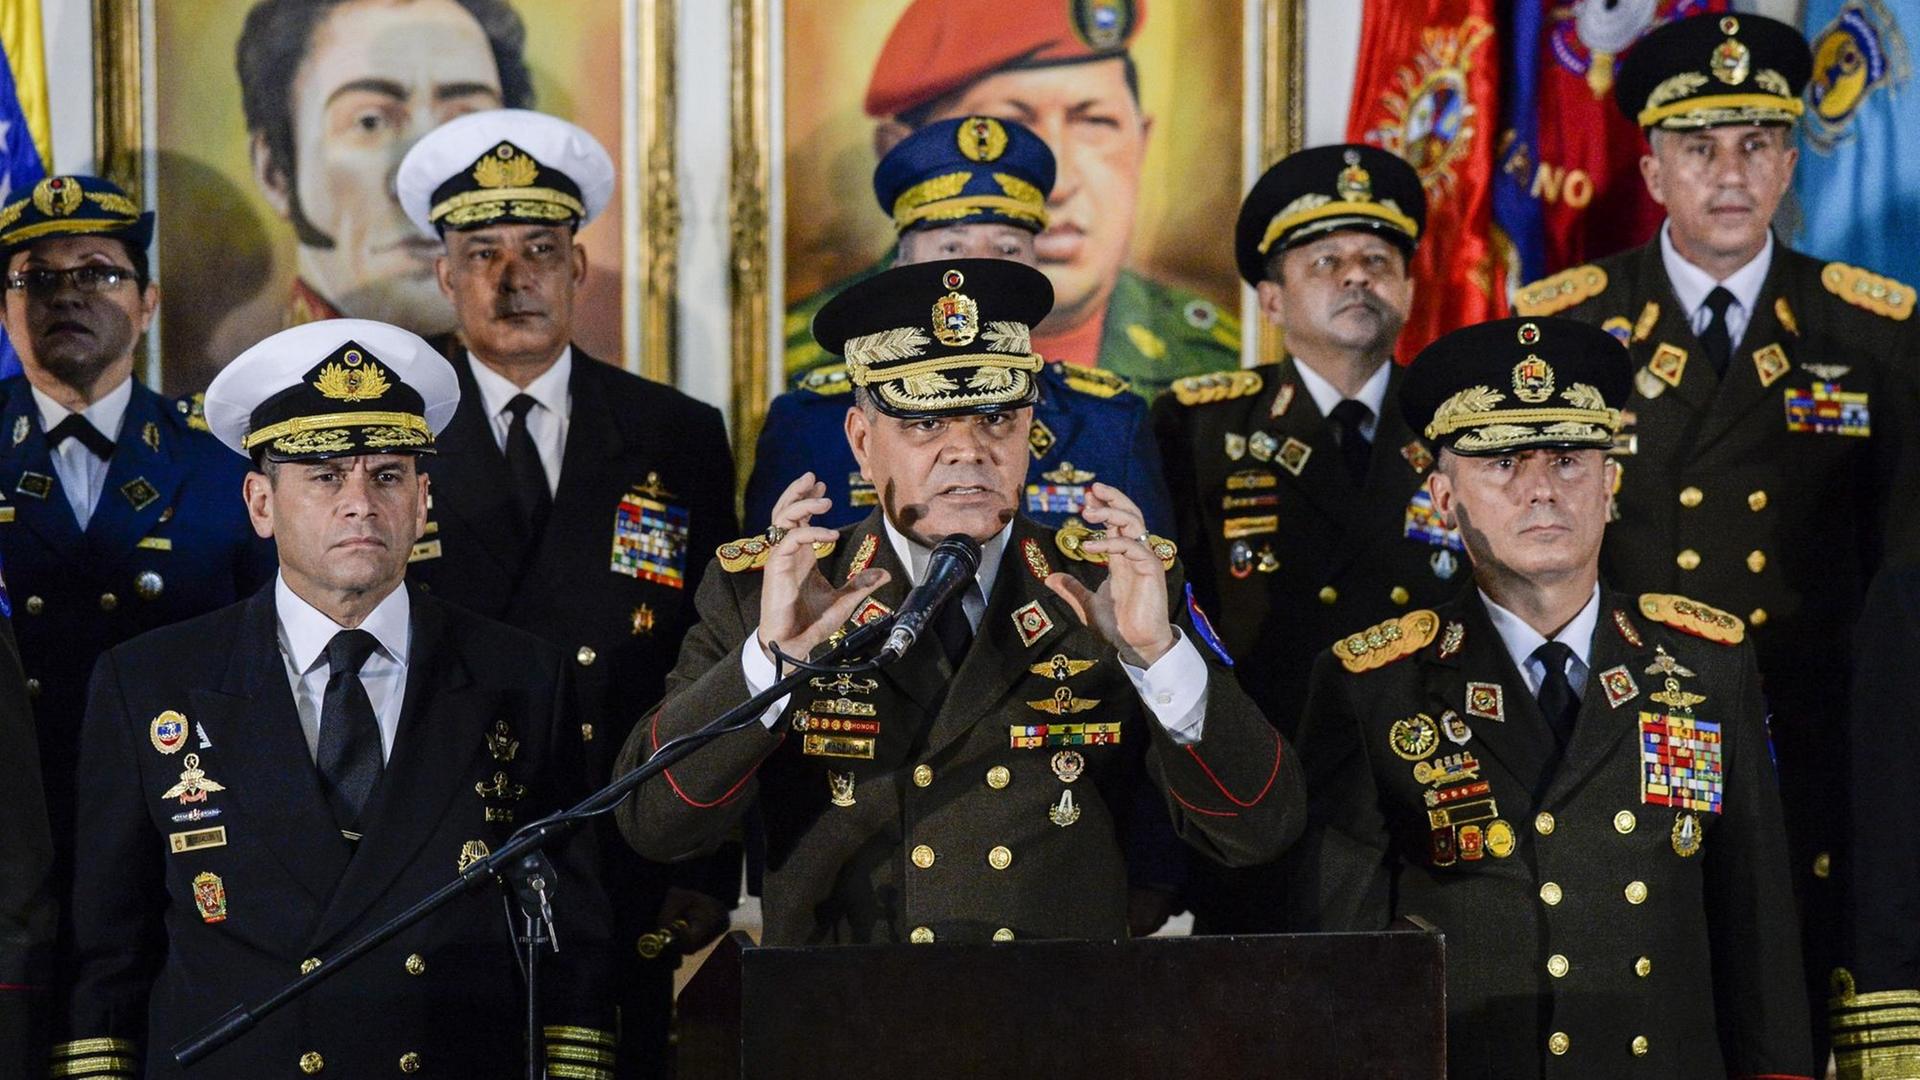 Das Bild zeigt Venezuelas Verteidigungsminister Vladimir Padrino gestikulierend während einer Erklärung hinter einem Mikrofon. Er trägt eine Uniform und ist umringt vonanderen Militärs.